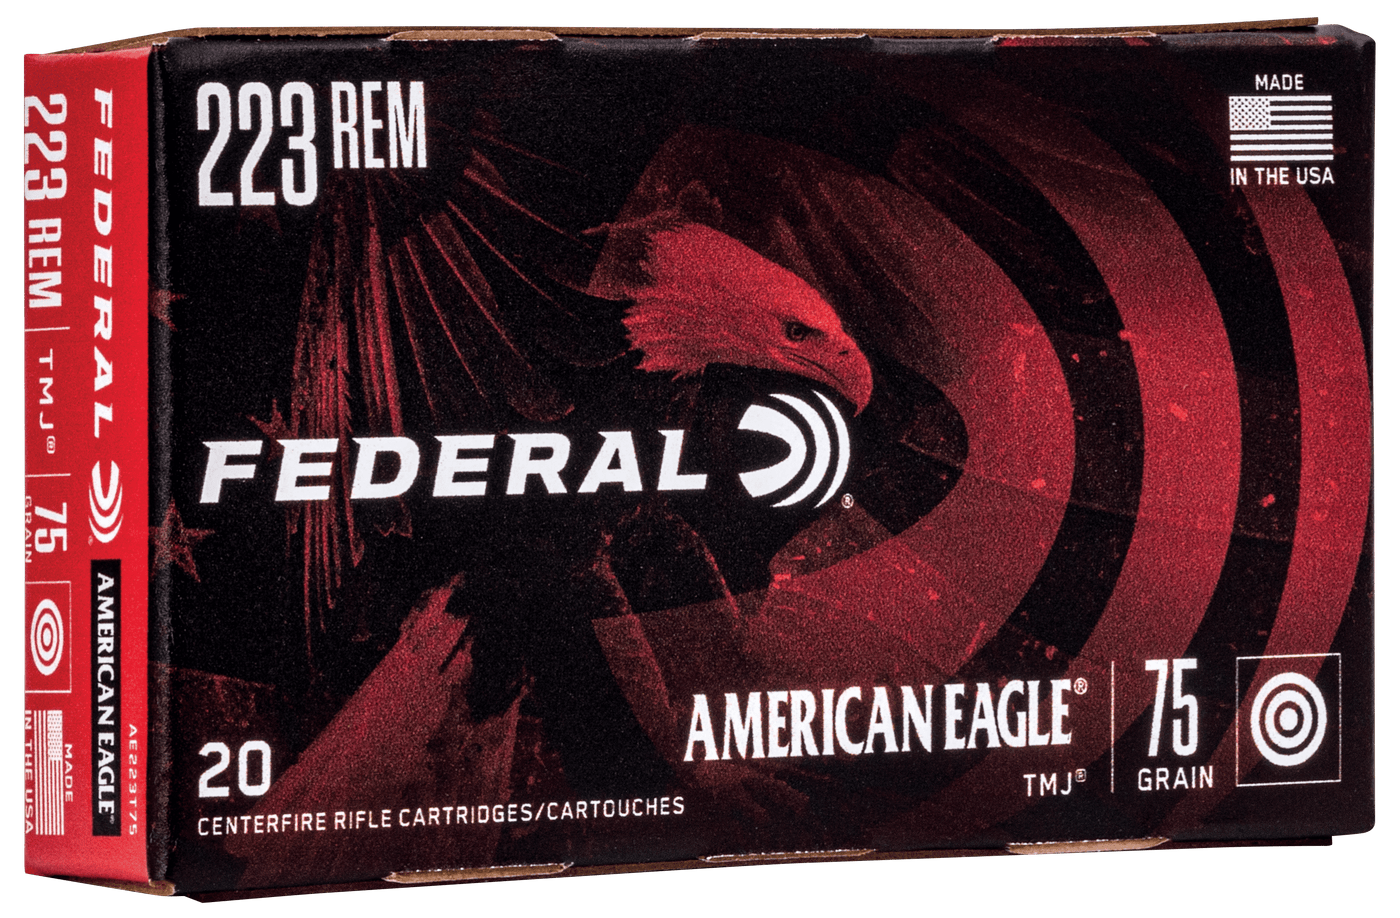 Federal Fed Am Eagle 223 Rem 75gr Tmj 20/500 Ammo